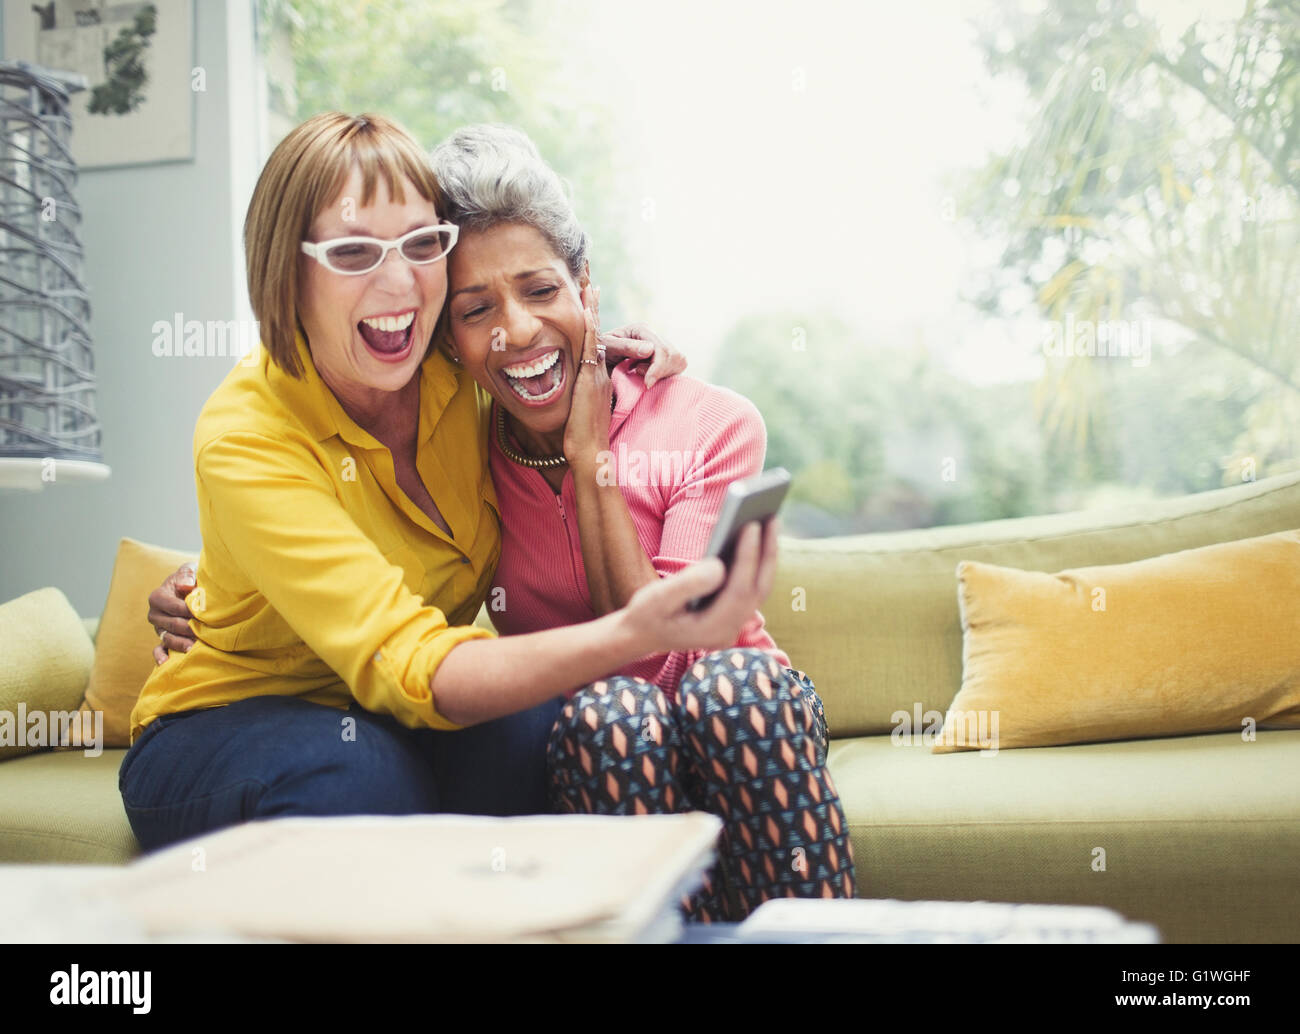 Laughing mujeres maduras abrazarse y teniendo selfie en el sofá Foto de stock